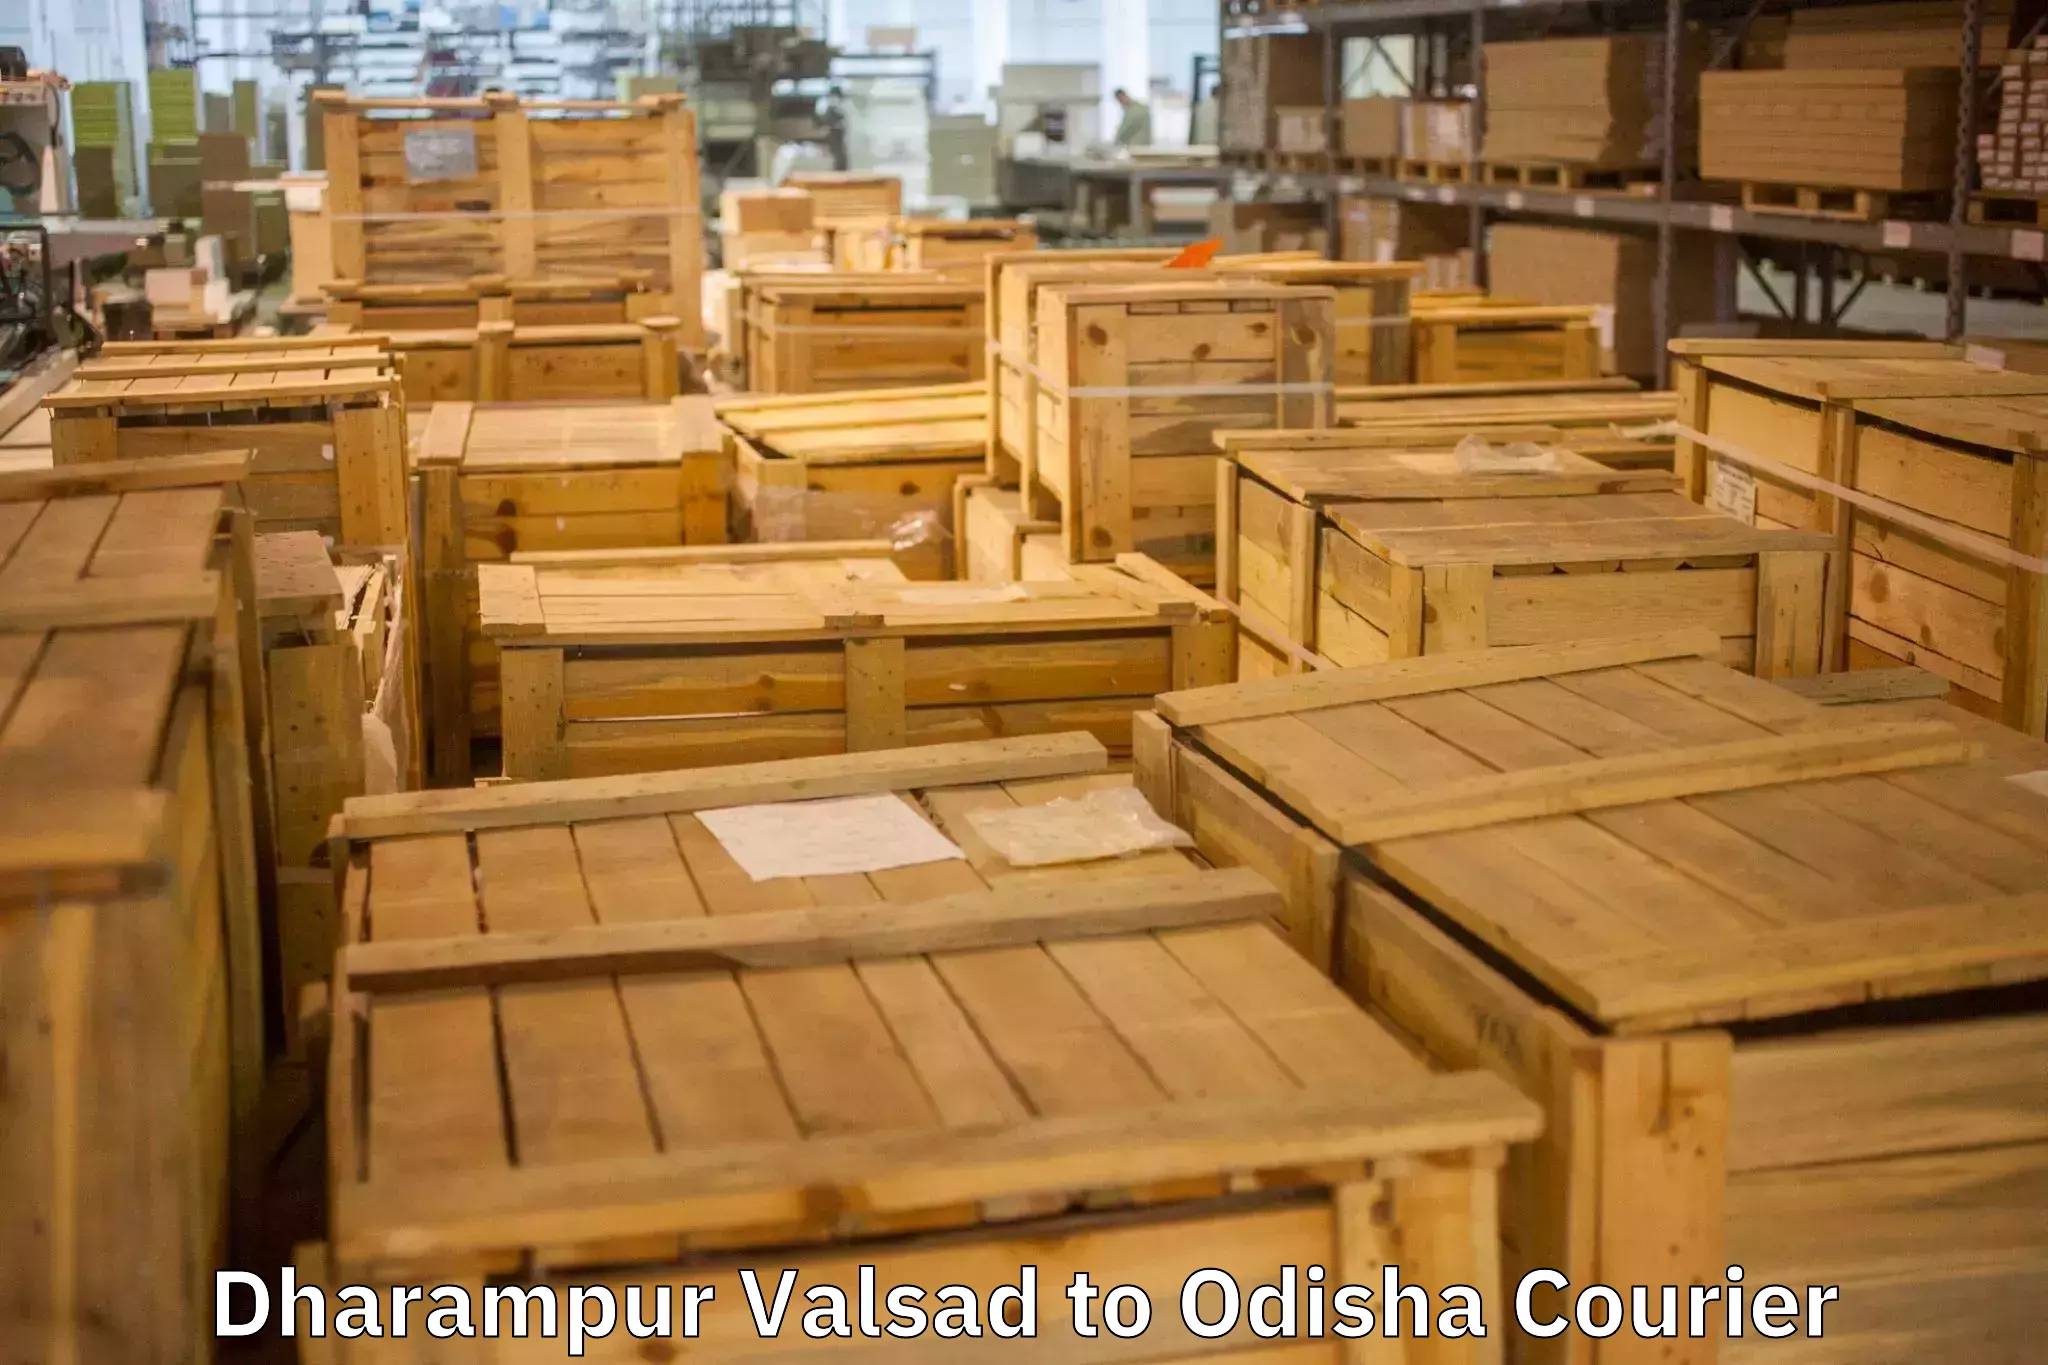 Quality moving company Dharampur Valsad to Nilagiri